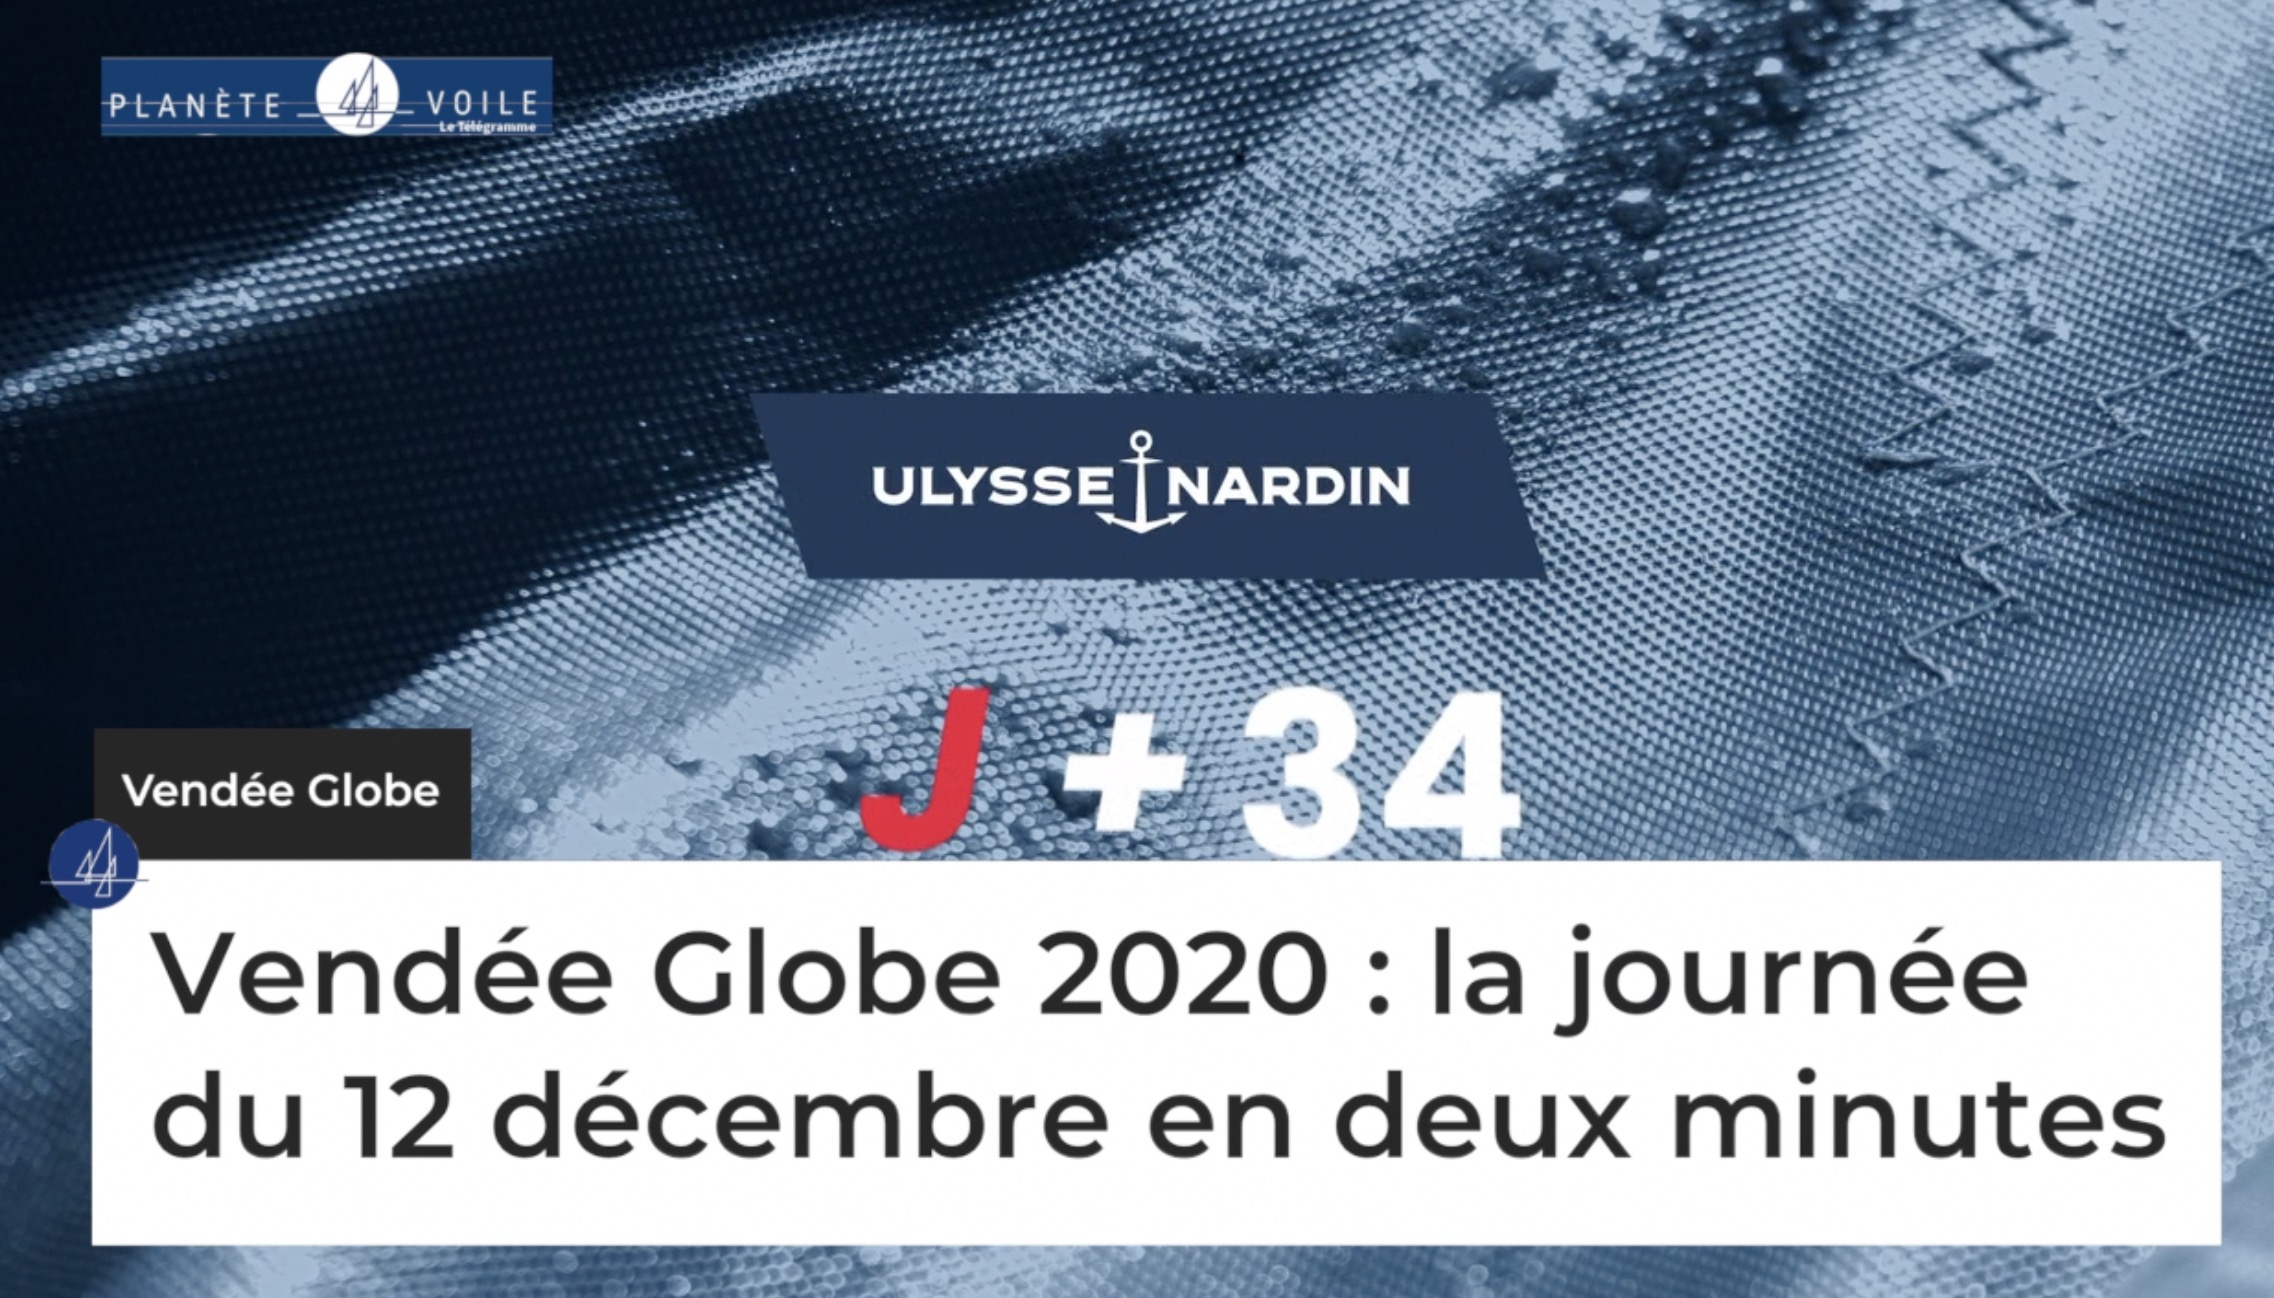 Vendée Globe 2020 : la journée du 12 décembre en 2 minutes (Le Télégramme)